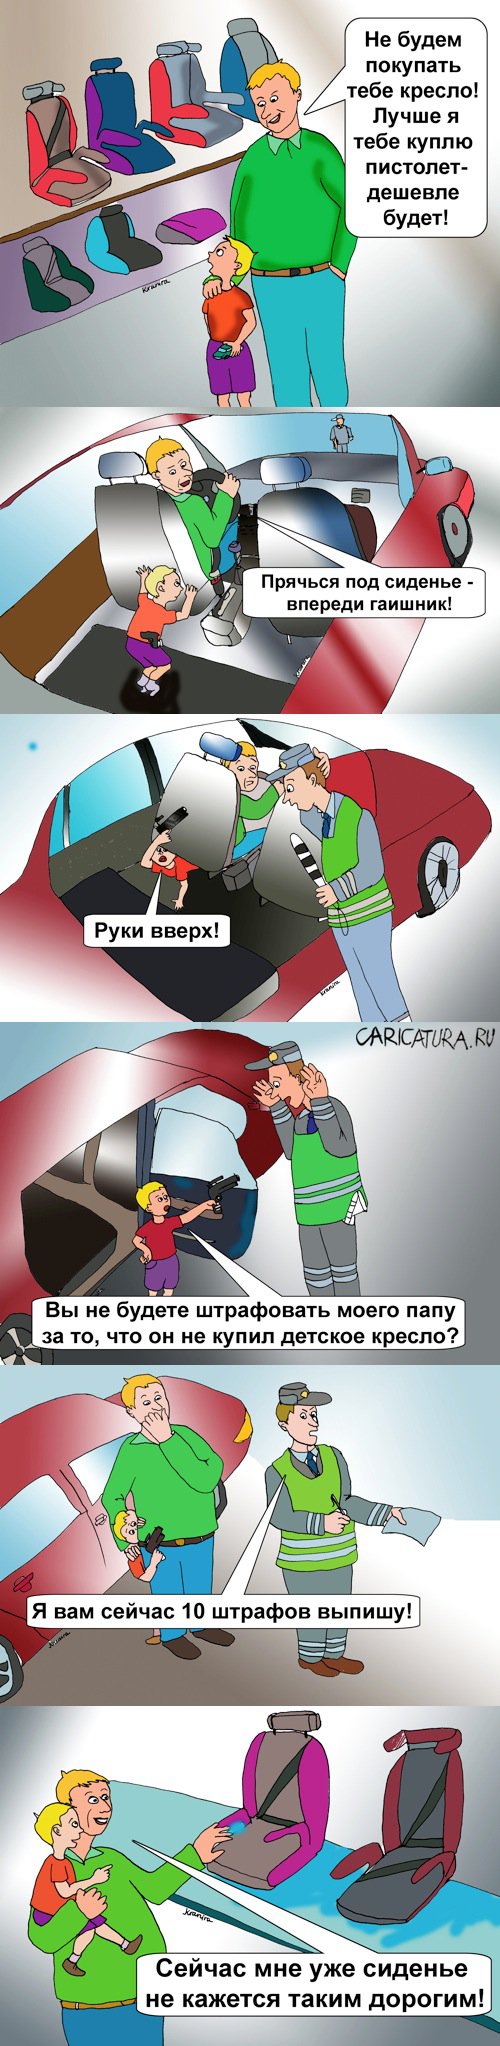 Комикс "Детские автомобильные кресла", Ирина Кран